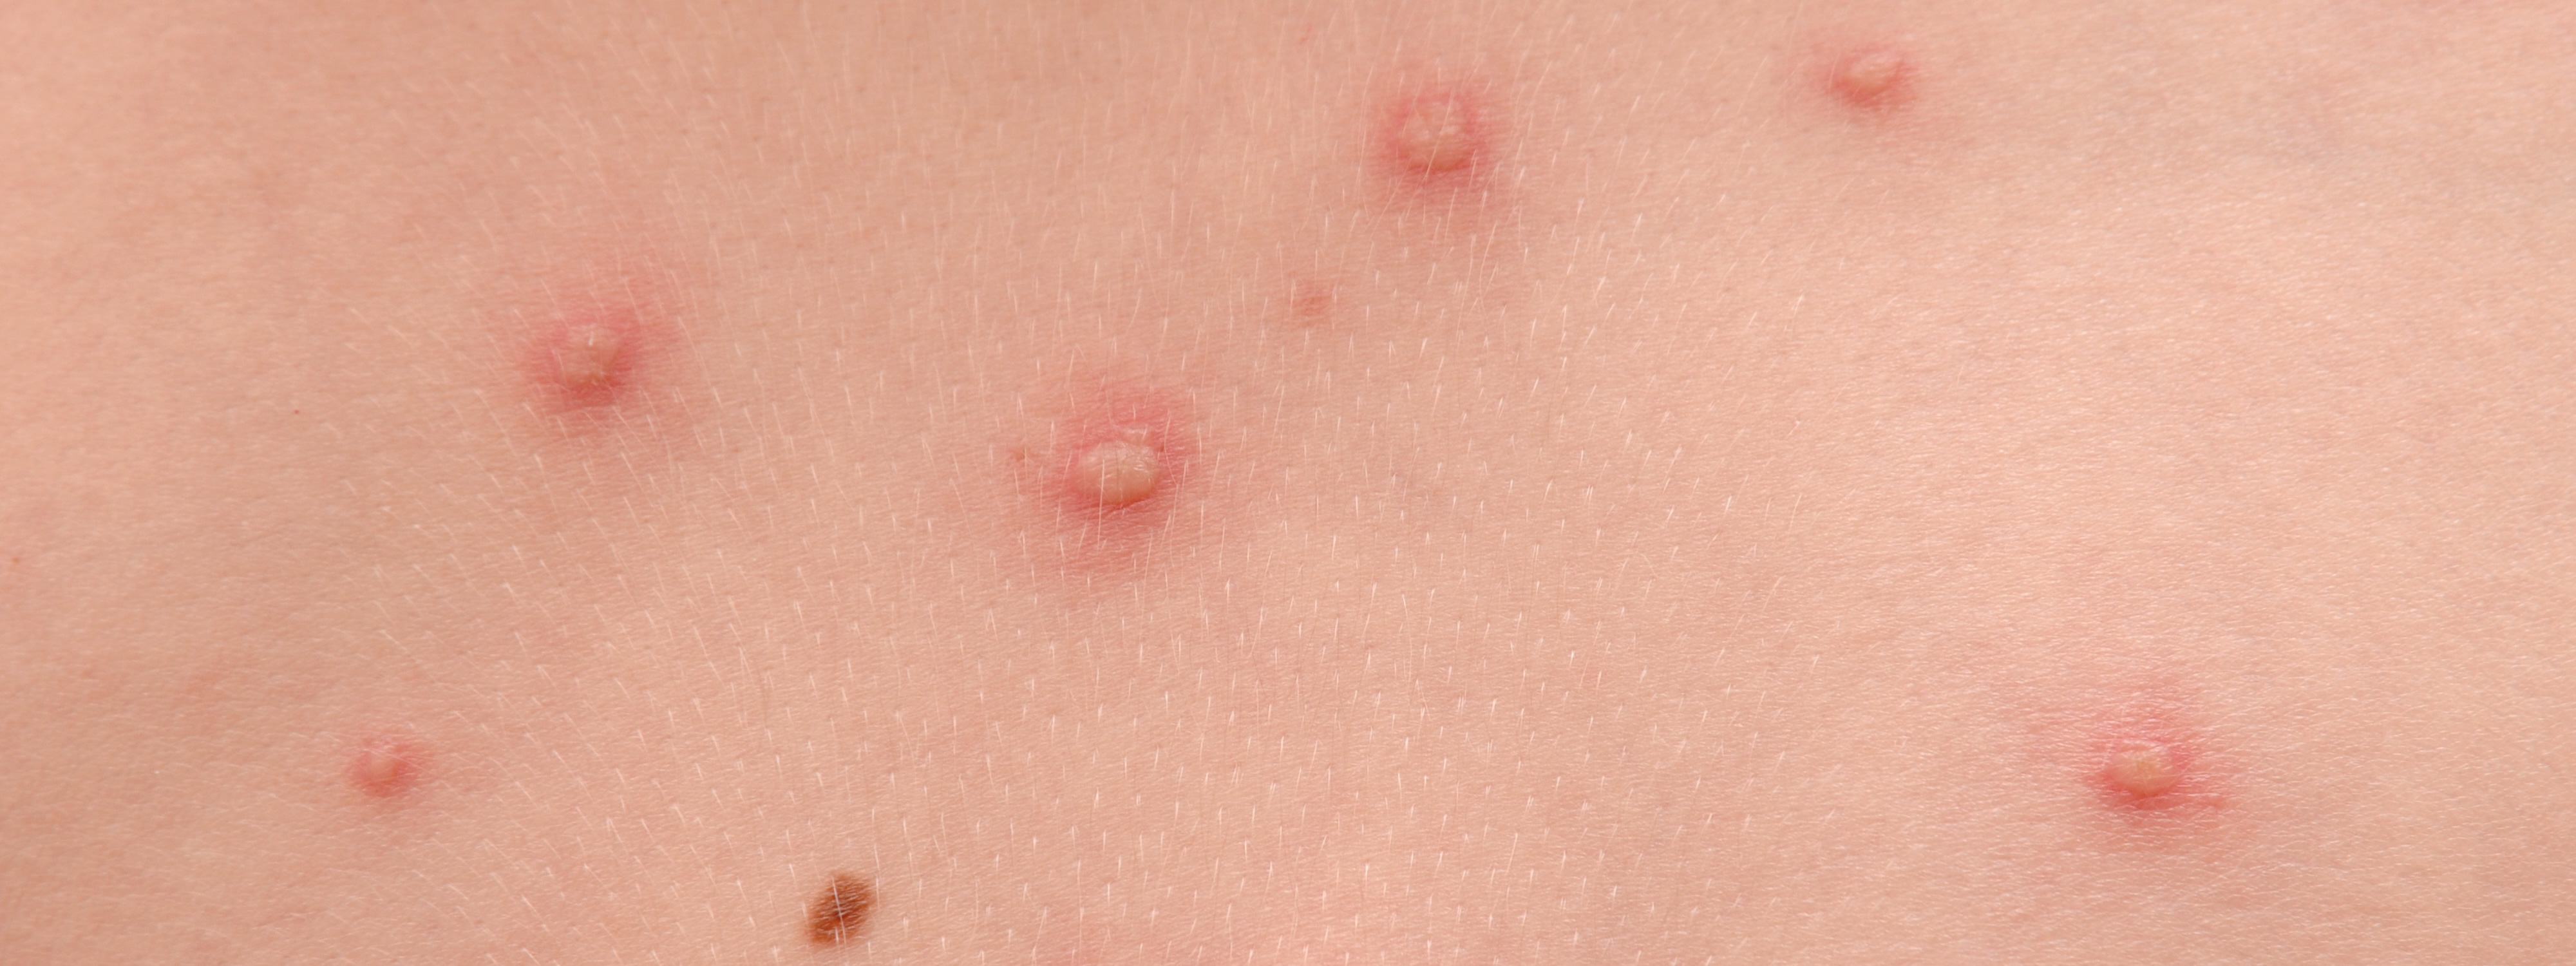 boutons de varicelle